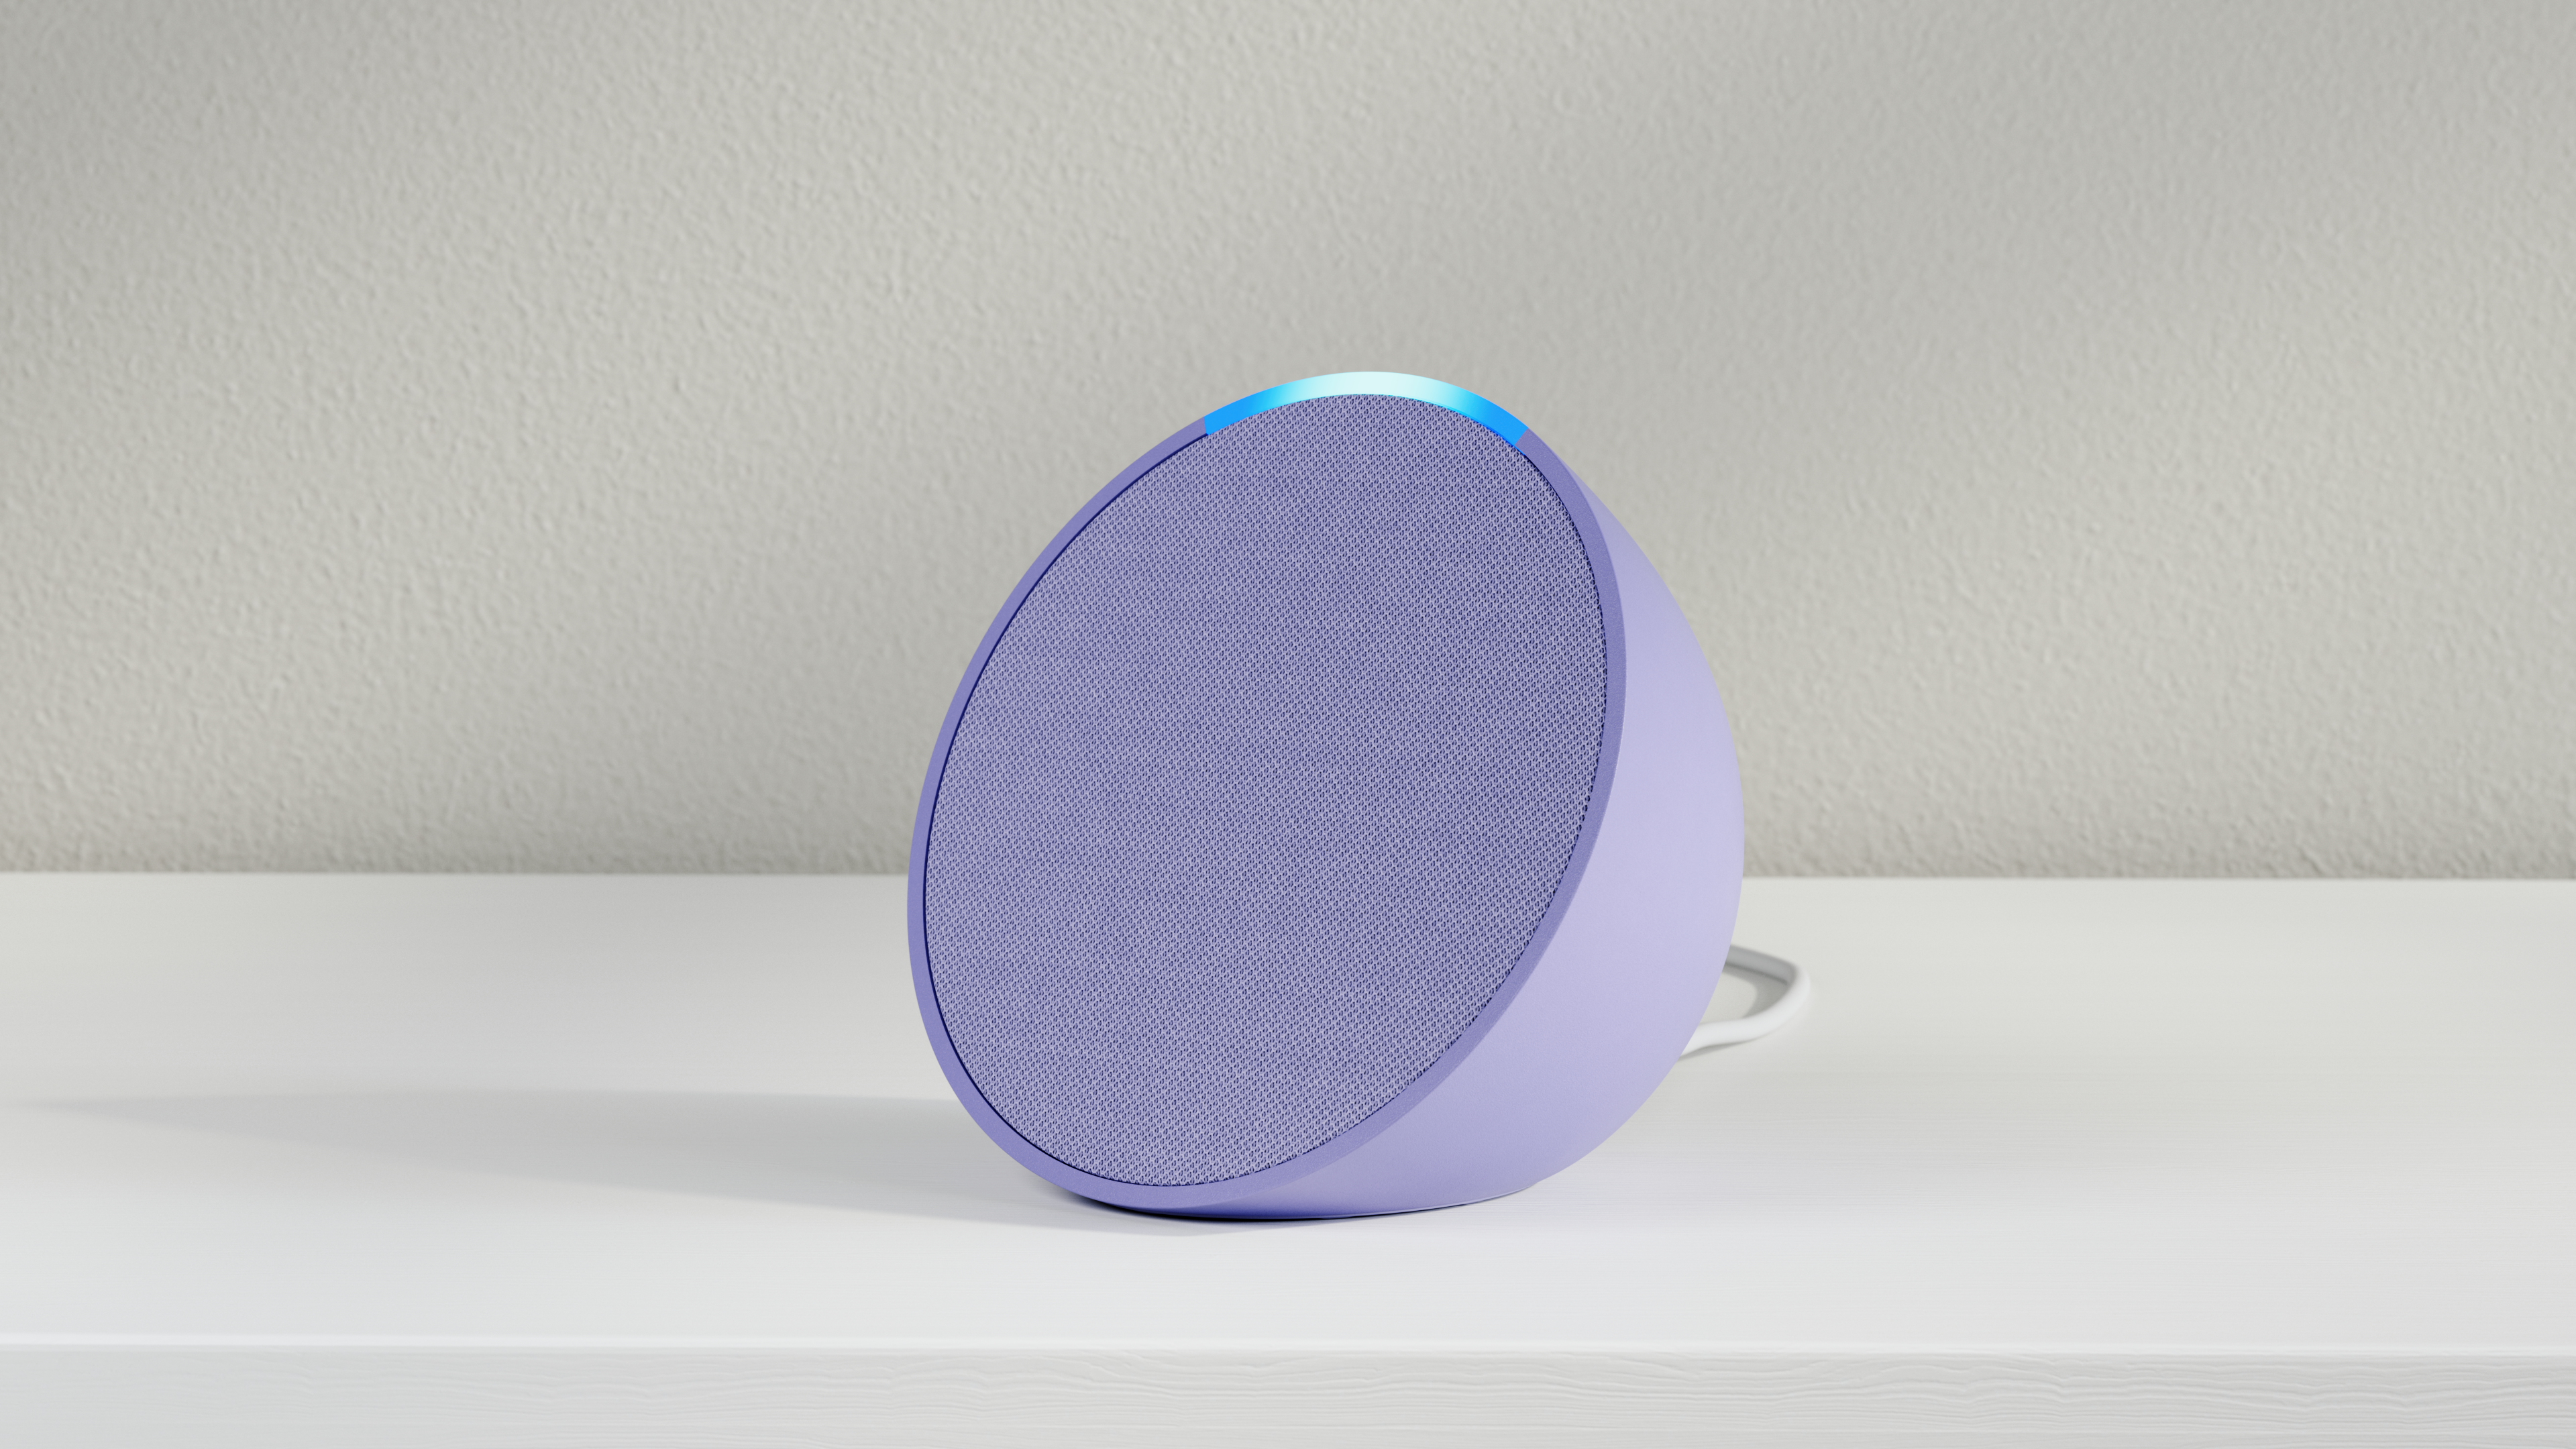 Buy the  Echo Pop Smart Speaker - Telstra